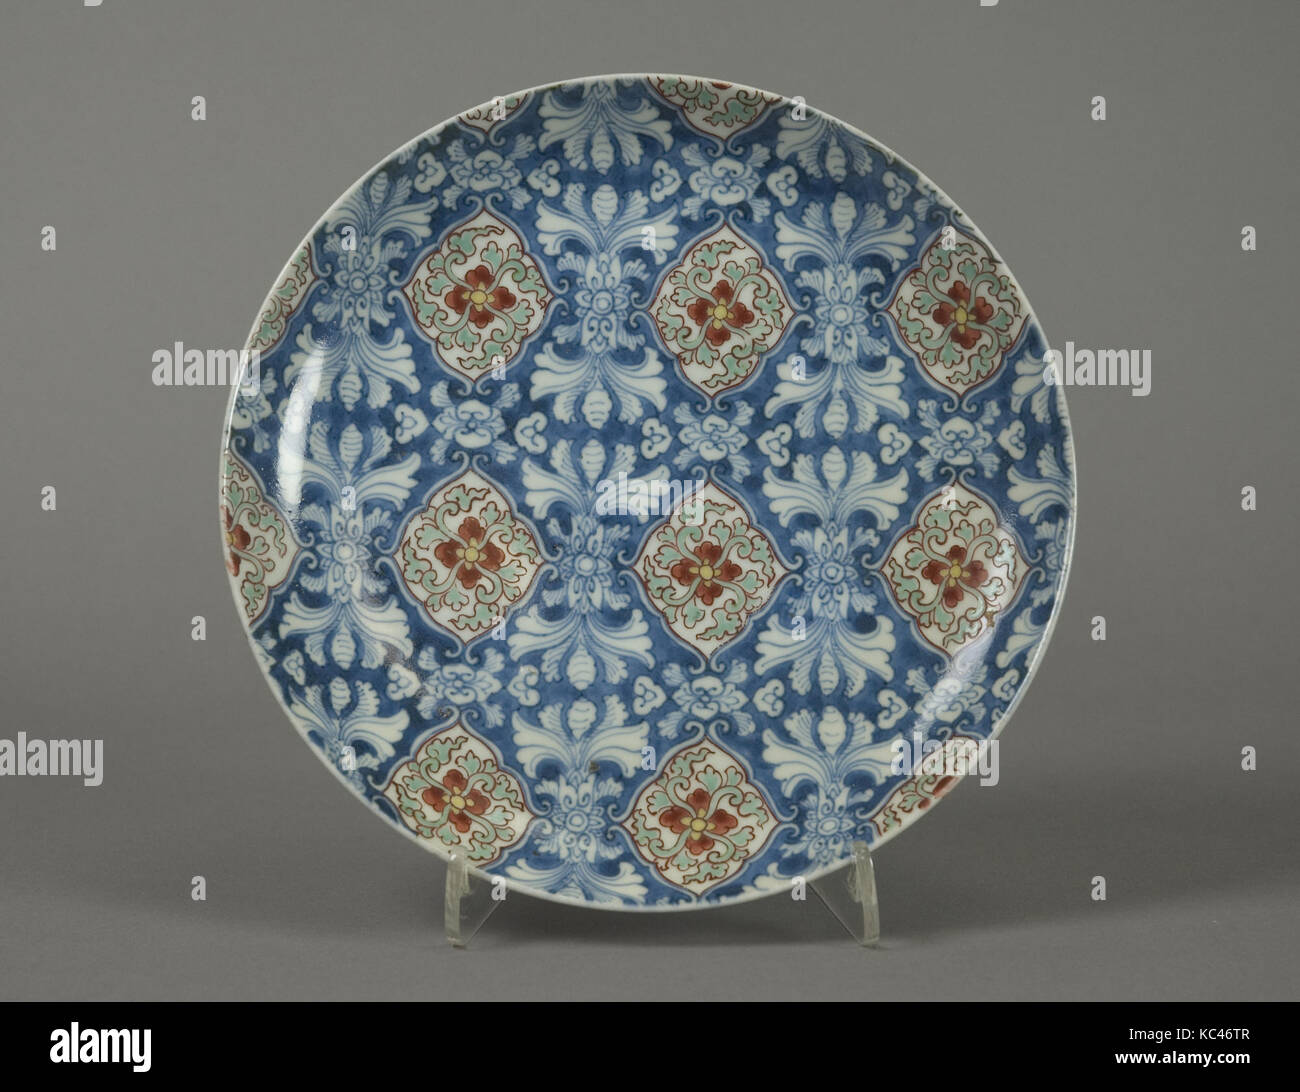 Plat à motif floral stylisé, période Edo (1615-1868), 1670-80, le Japon, la porcelaine avec bleu sous glaçure et émaux overglaze Banque D'Images